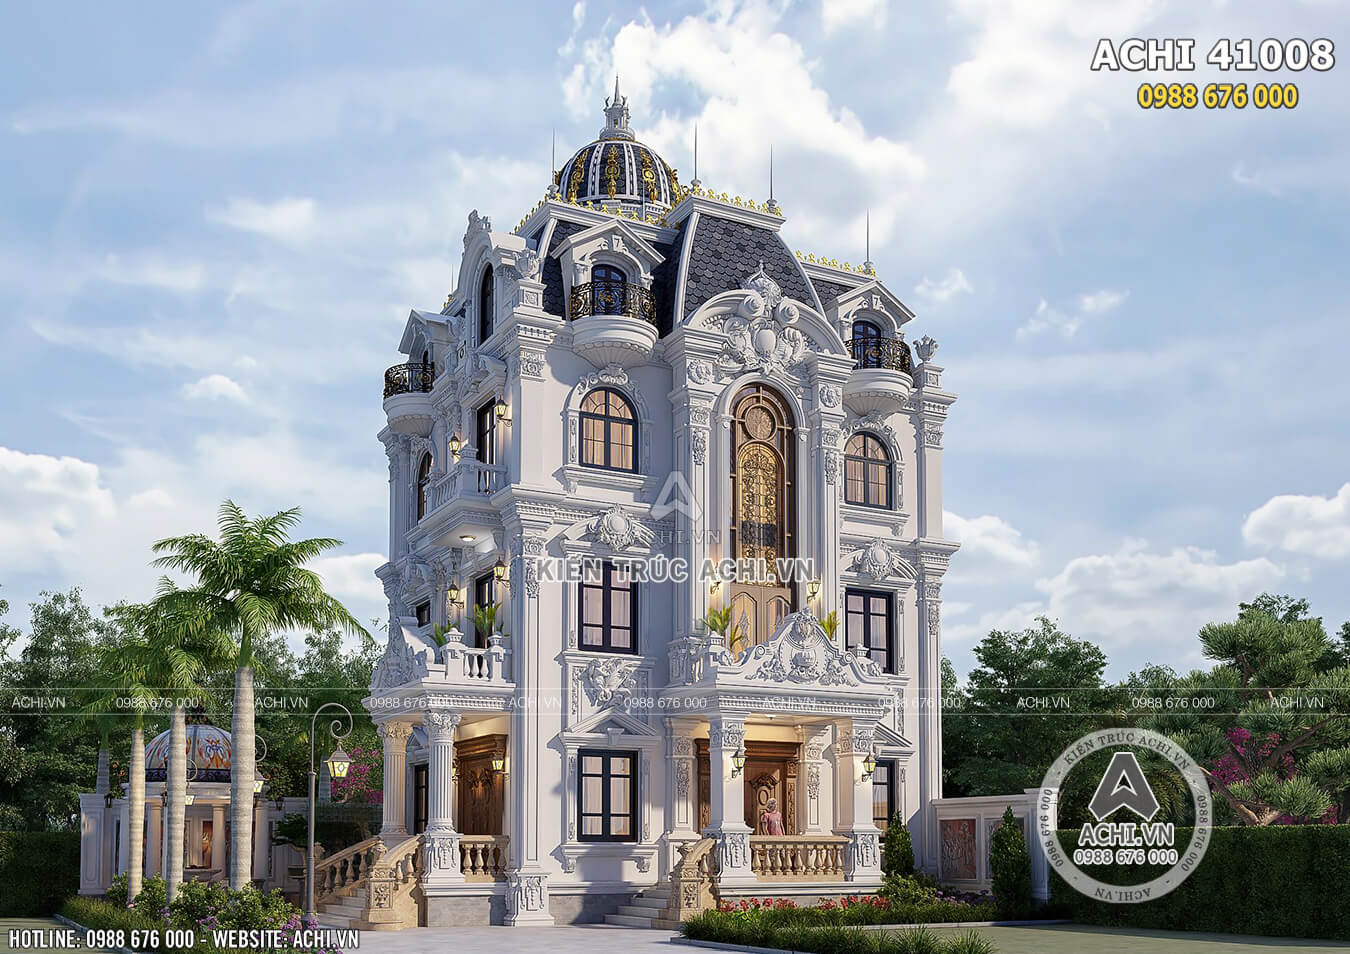 Hình ảnh: Mẫu biệt thự tân cổ điển đẹp tại Quảng Ninh – ACHI 41008